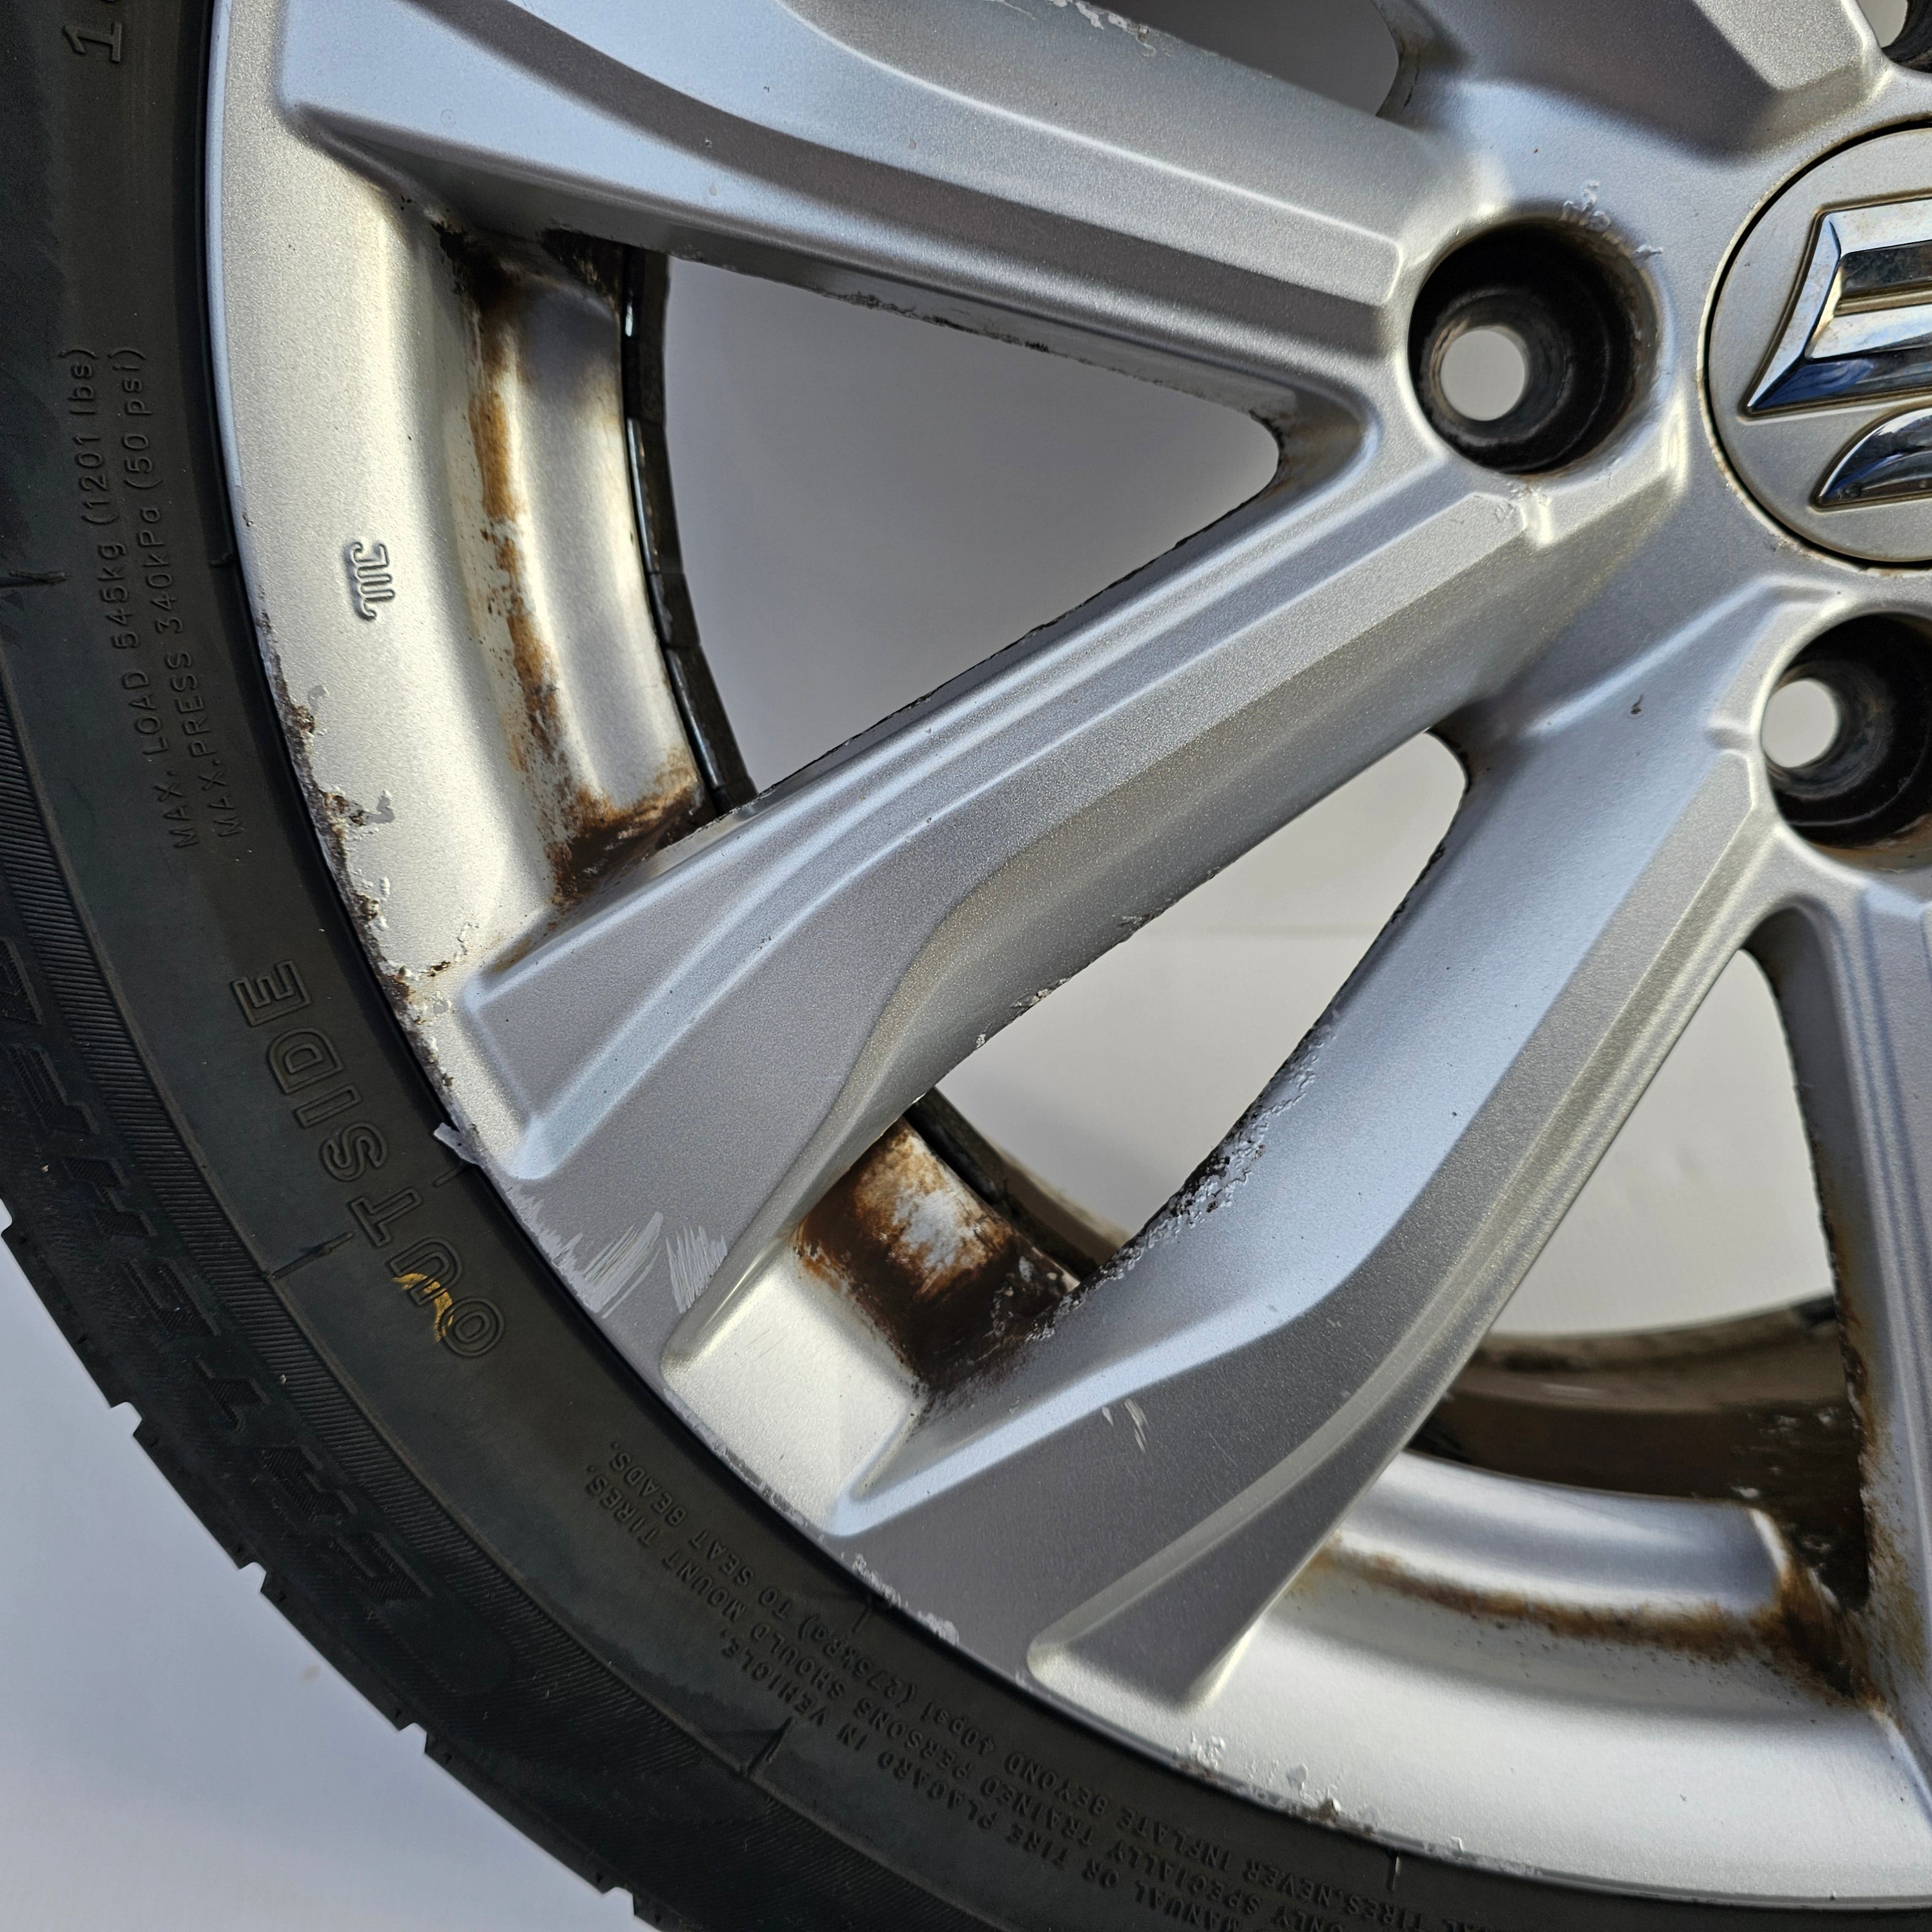 Suzuki Swift FZ Single Alloy Wheel &  185/55/16 Tyre  (16x6J / 4x100) *0212*